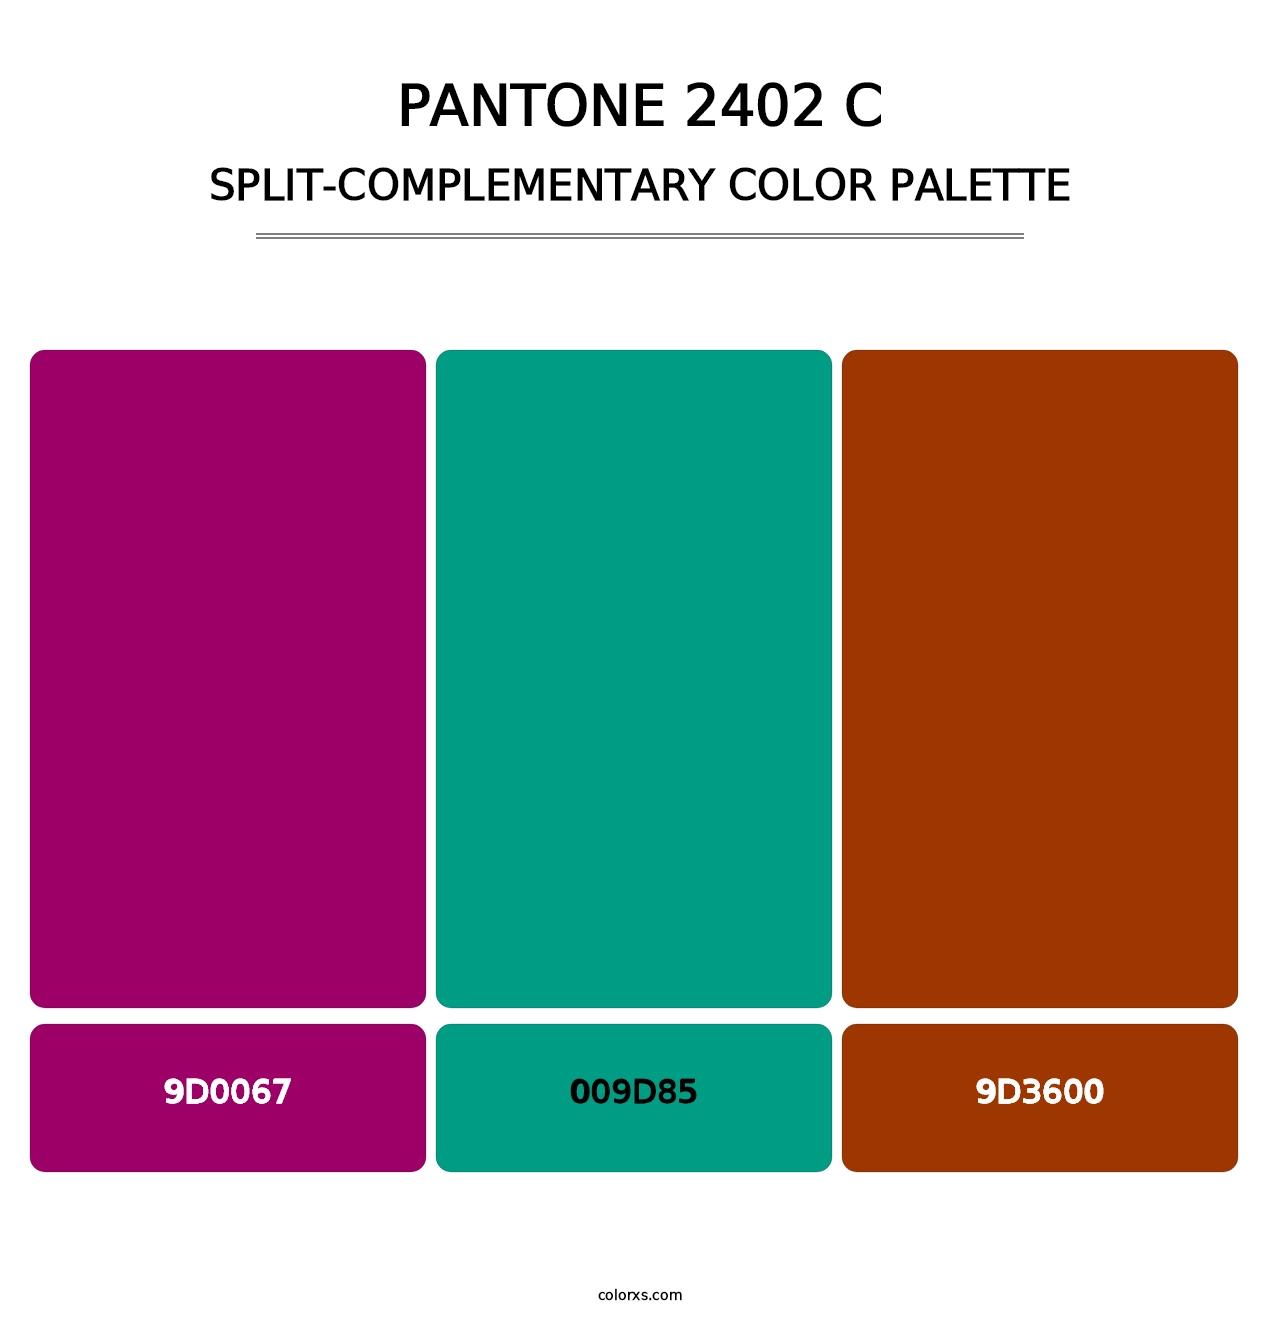 PANTONE 2402 C - Split-Complementary Color Palette